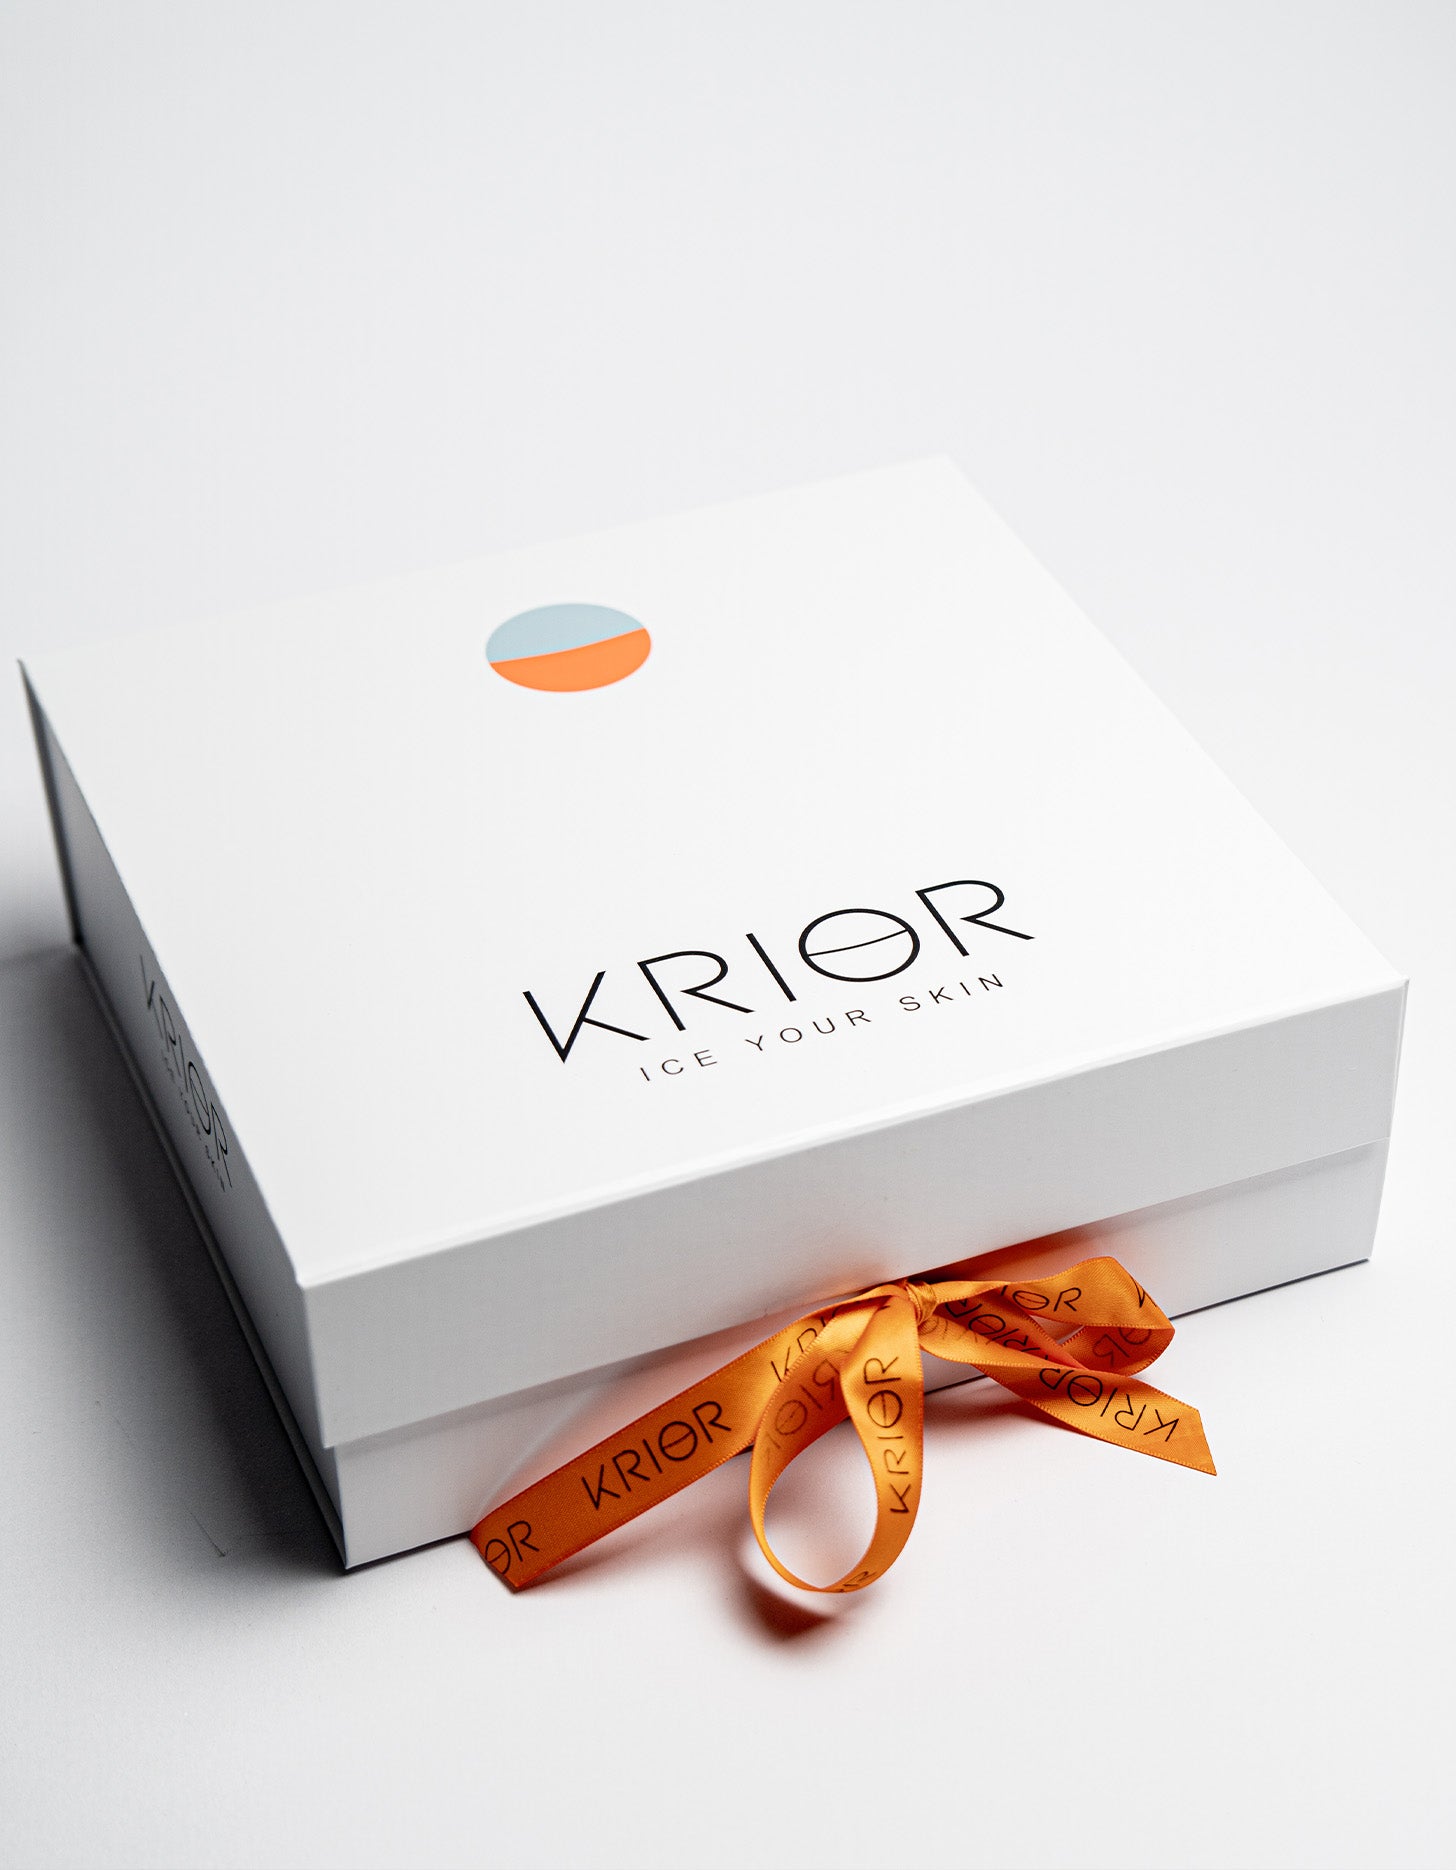 Krior Premium Skin Icing Box